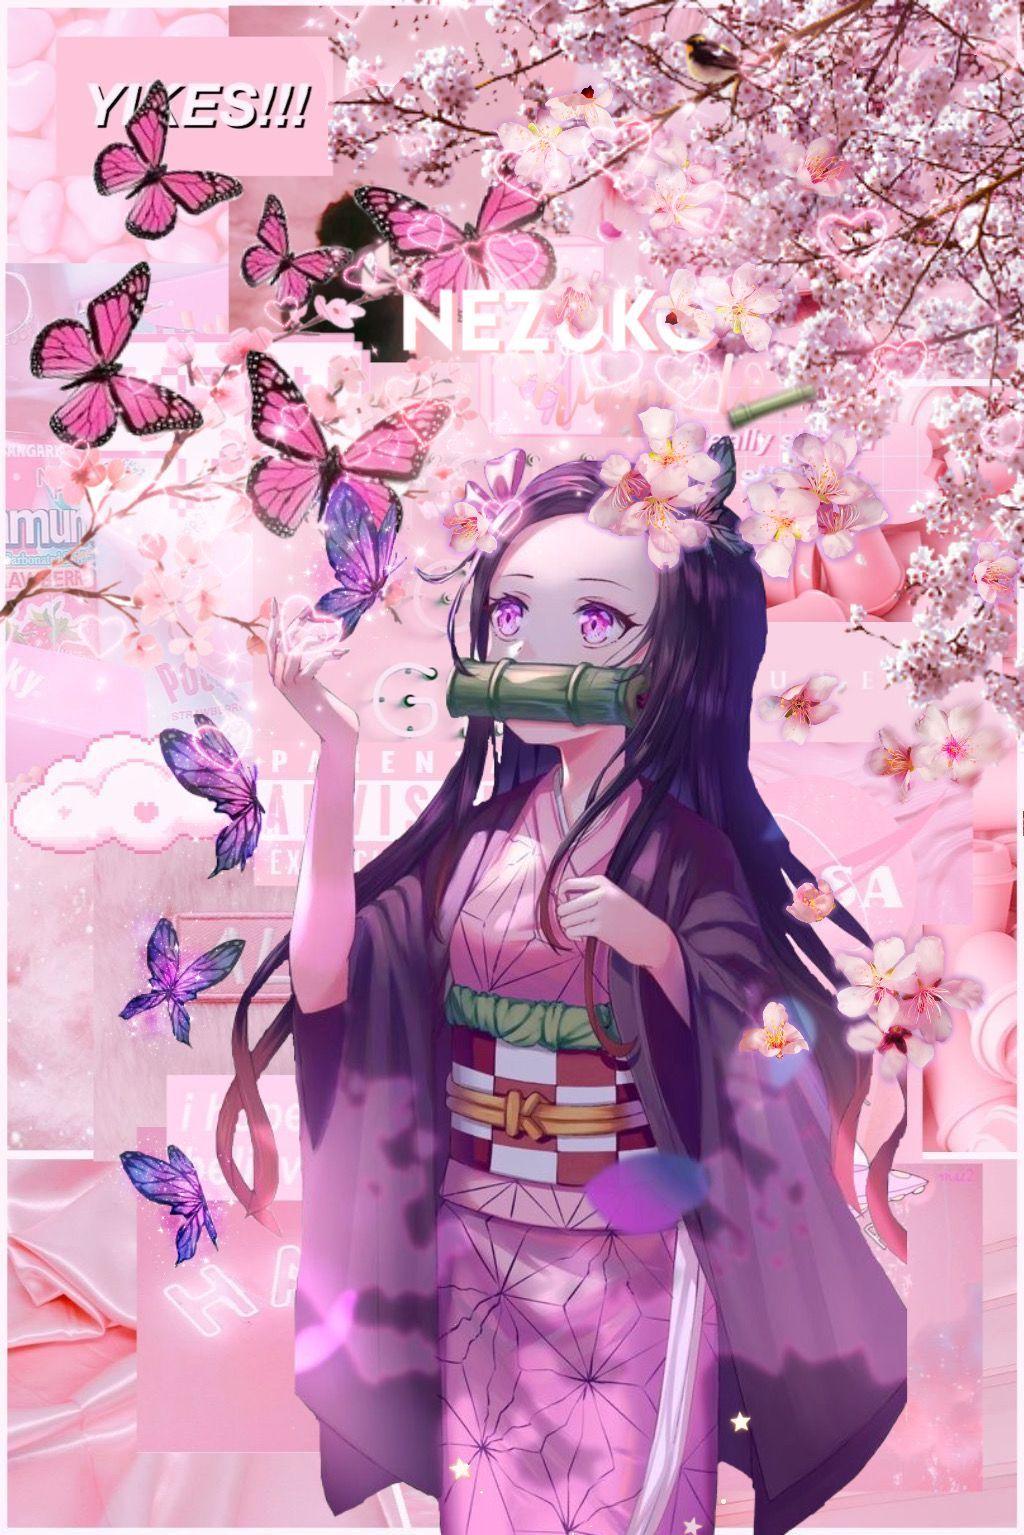 Nezuko Aesthetic Wallpapers - Top Free Nezuko Aesthetic Backgrounds ...